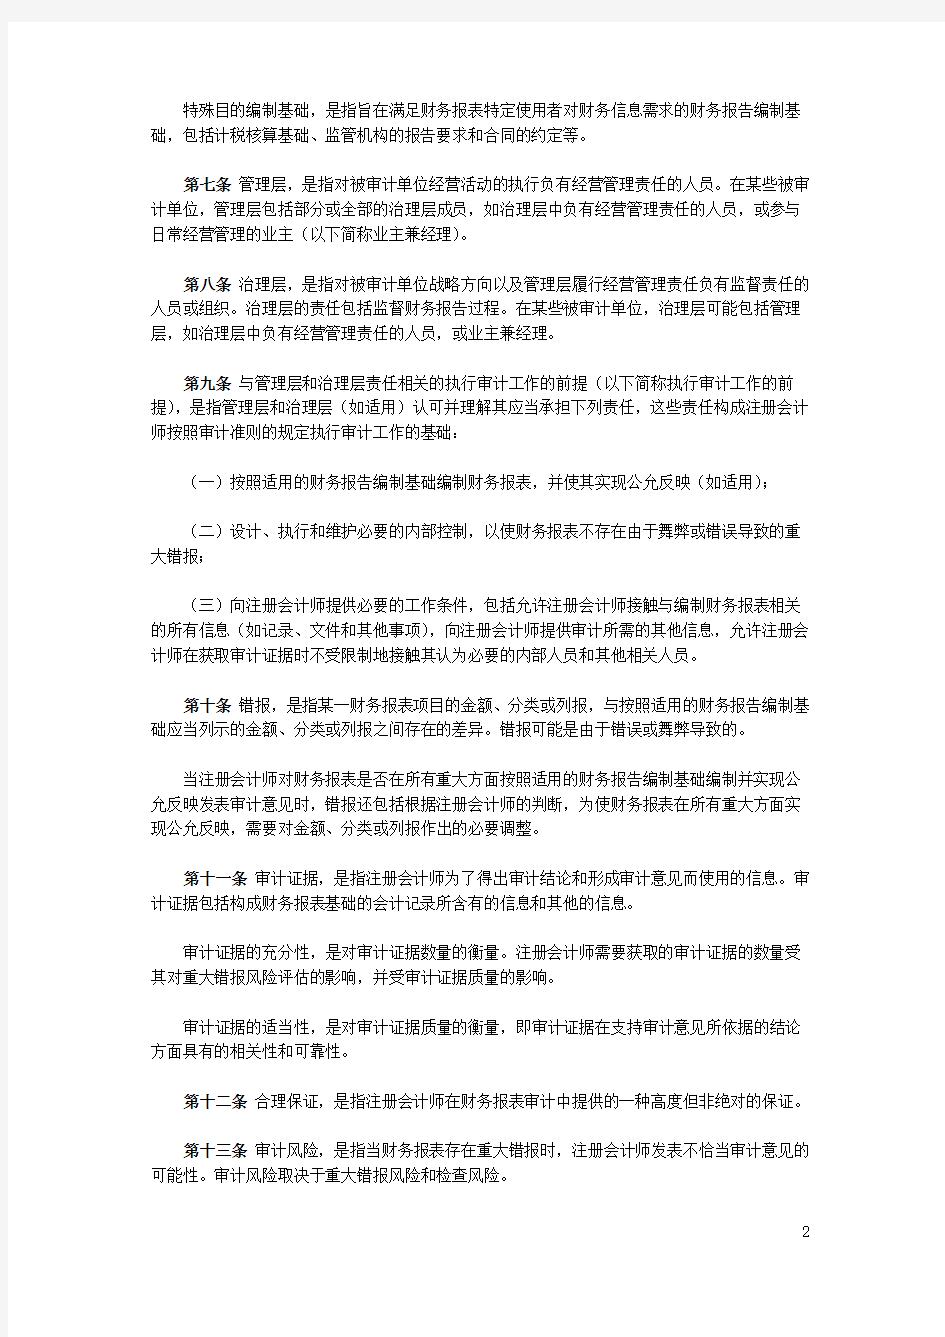 中国注册会计师审计准则第1101号——注册会计师的总体目标和审计工作的基本要求